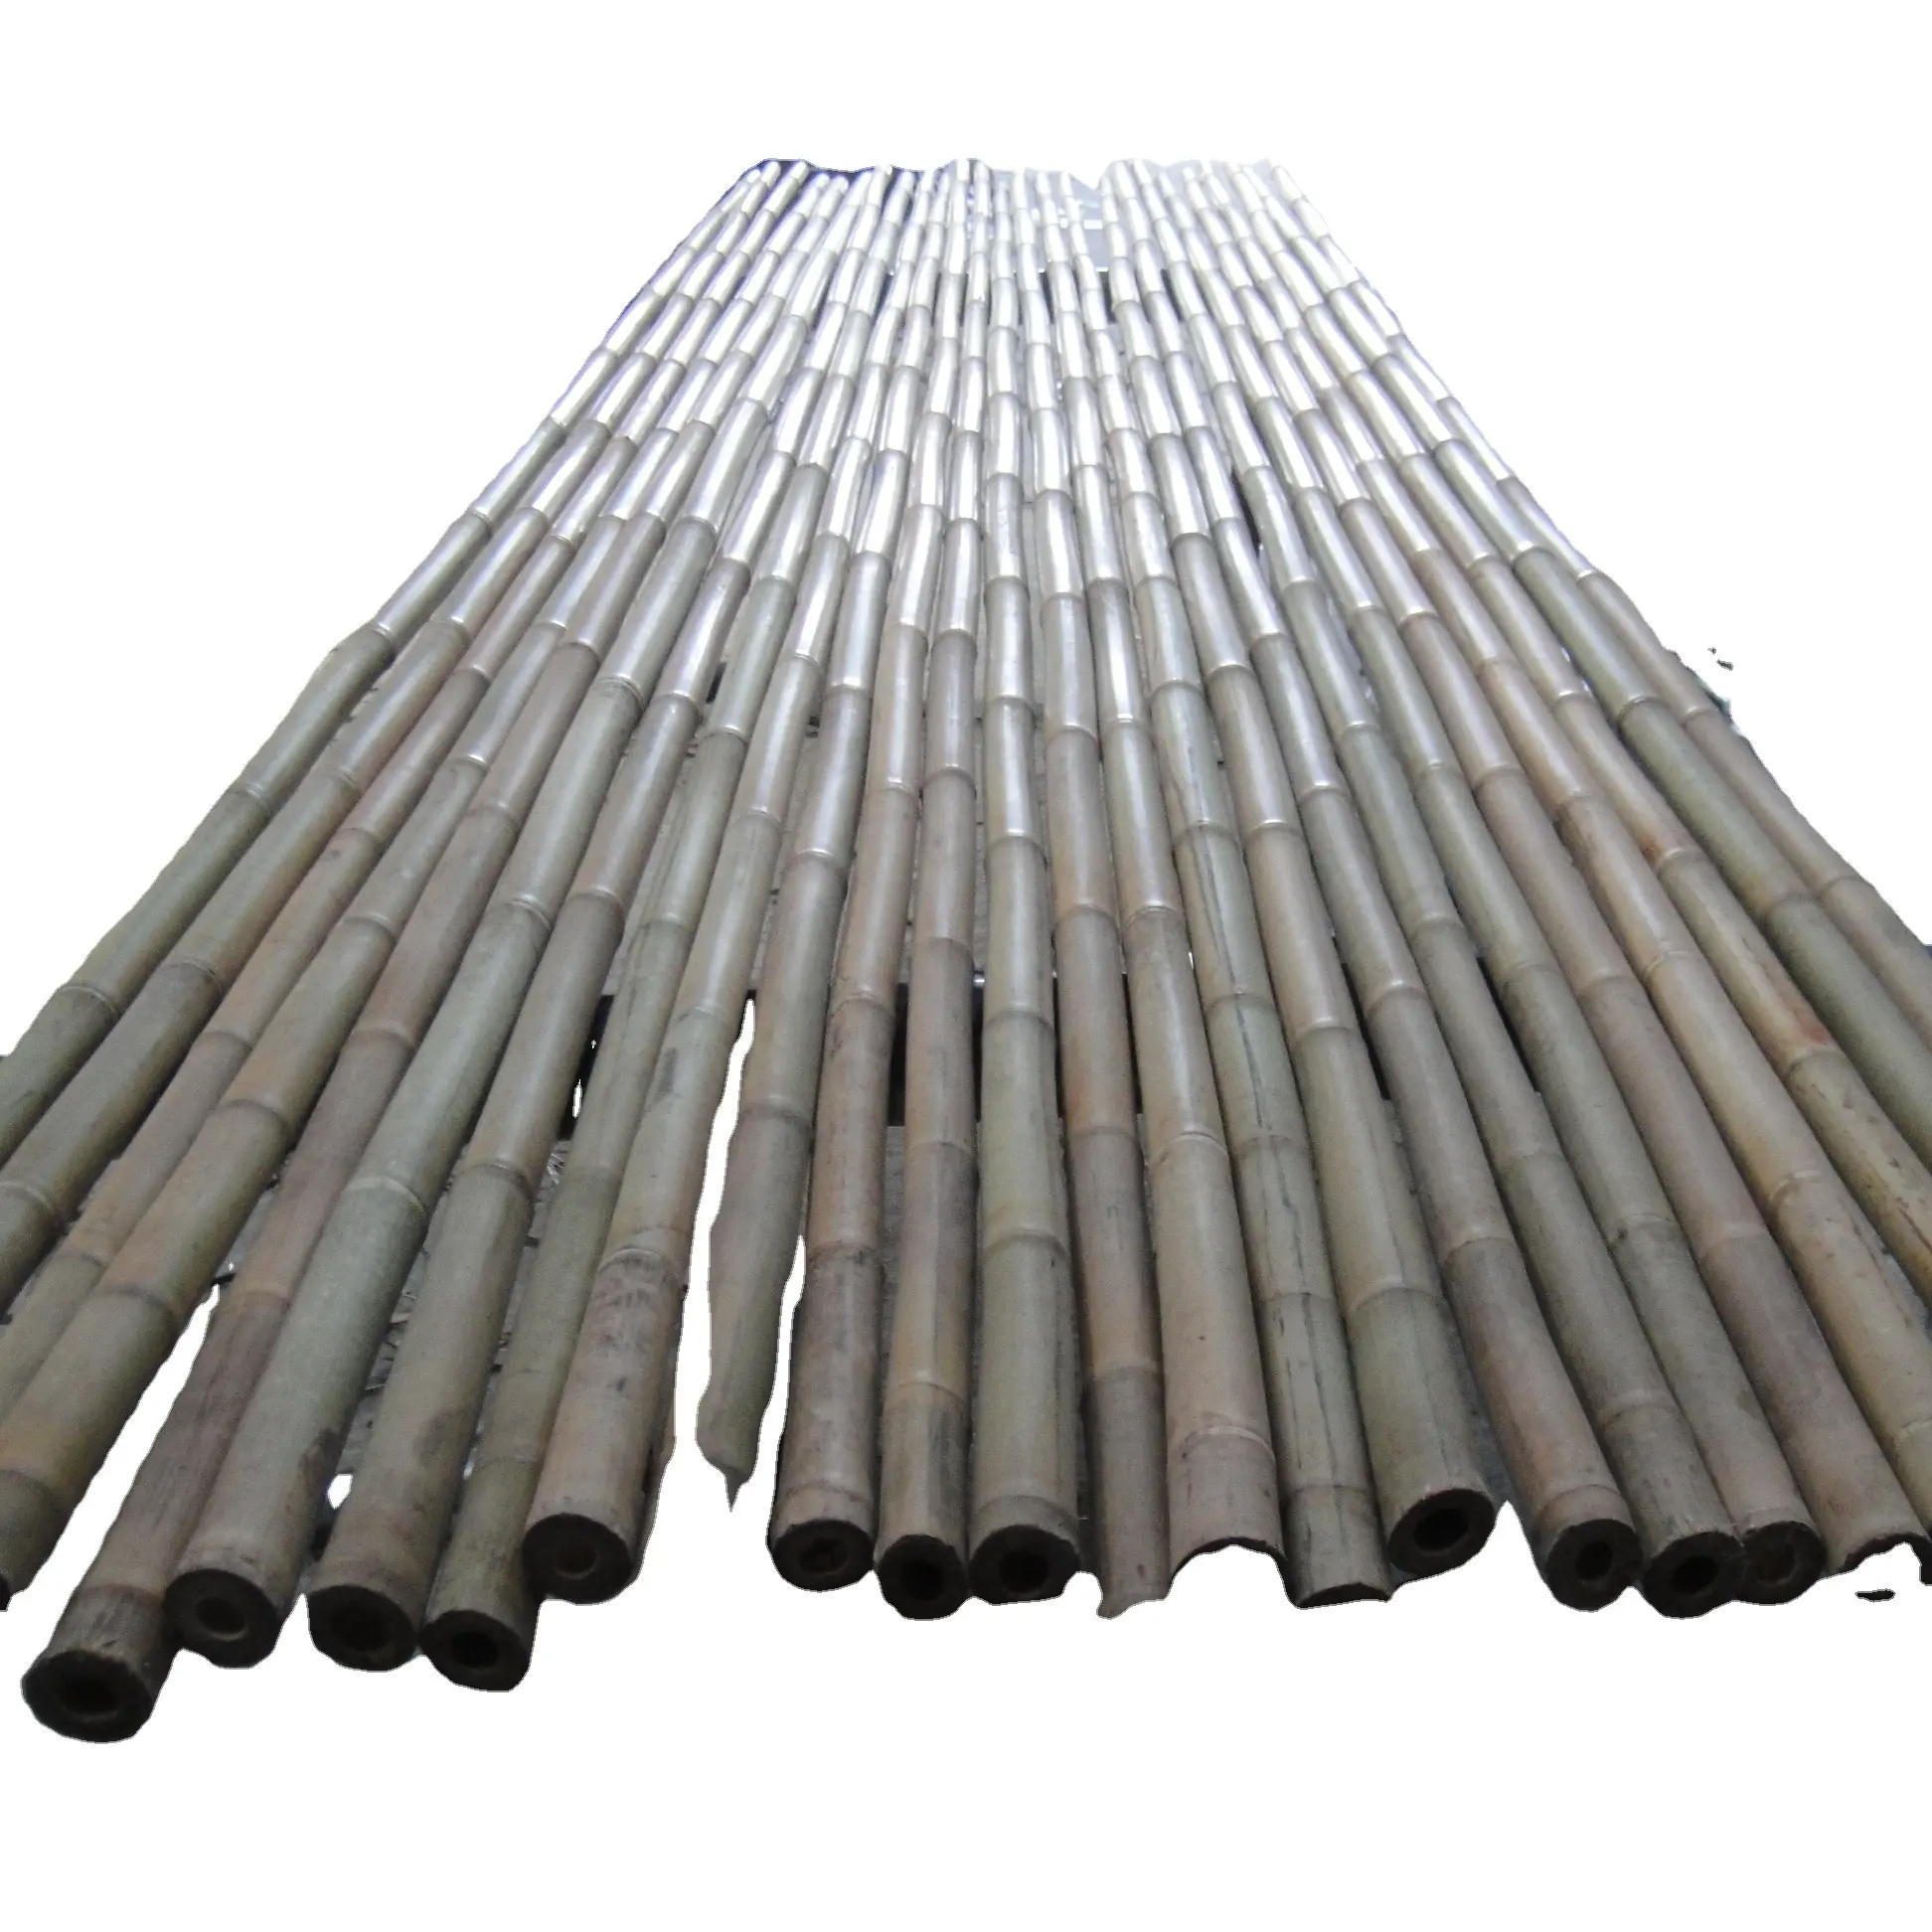 Natural bamboo